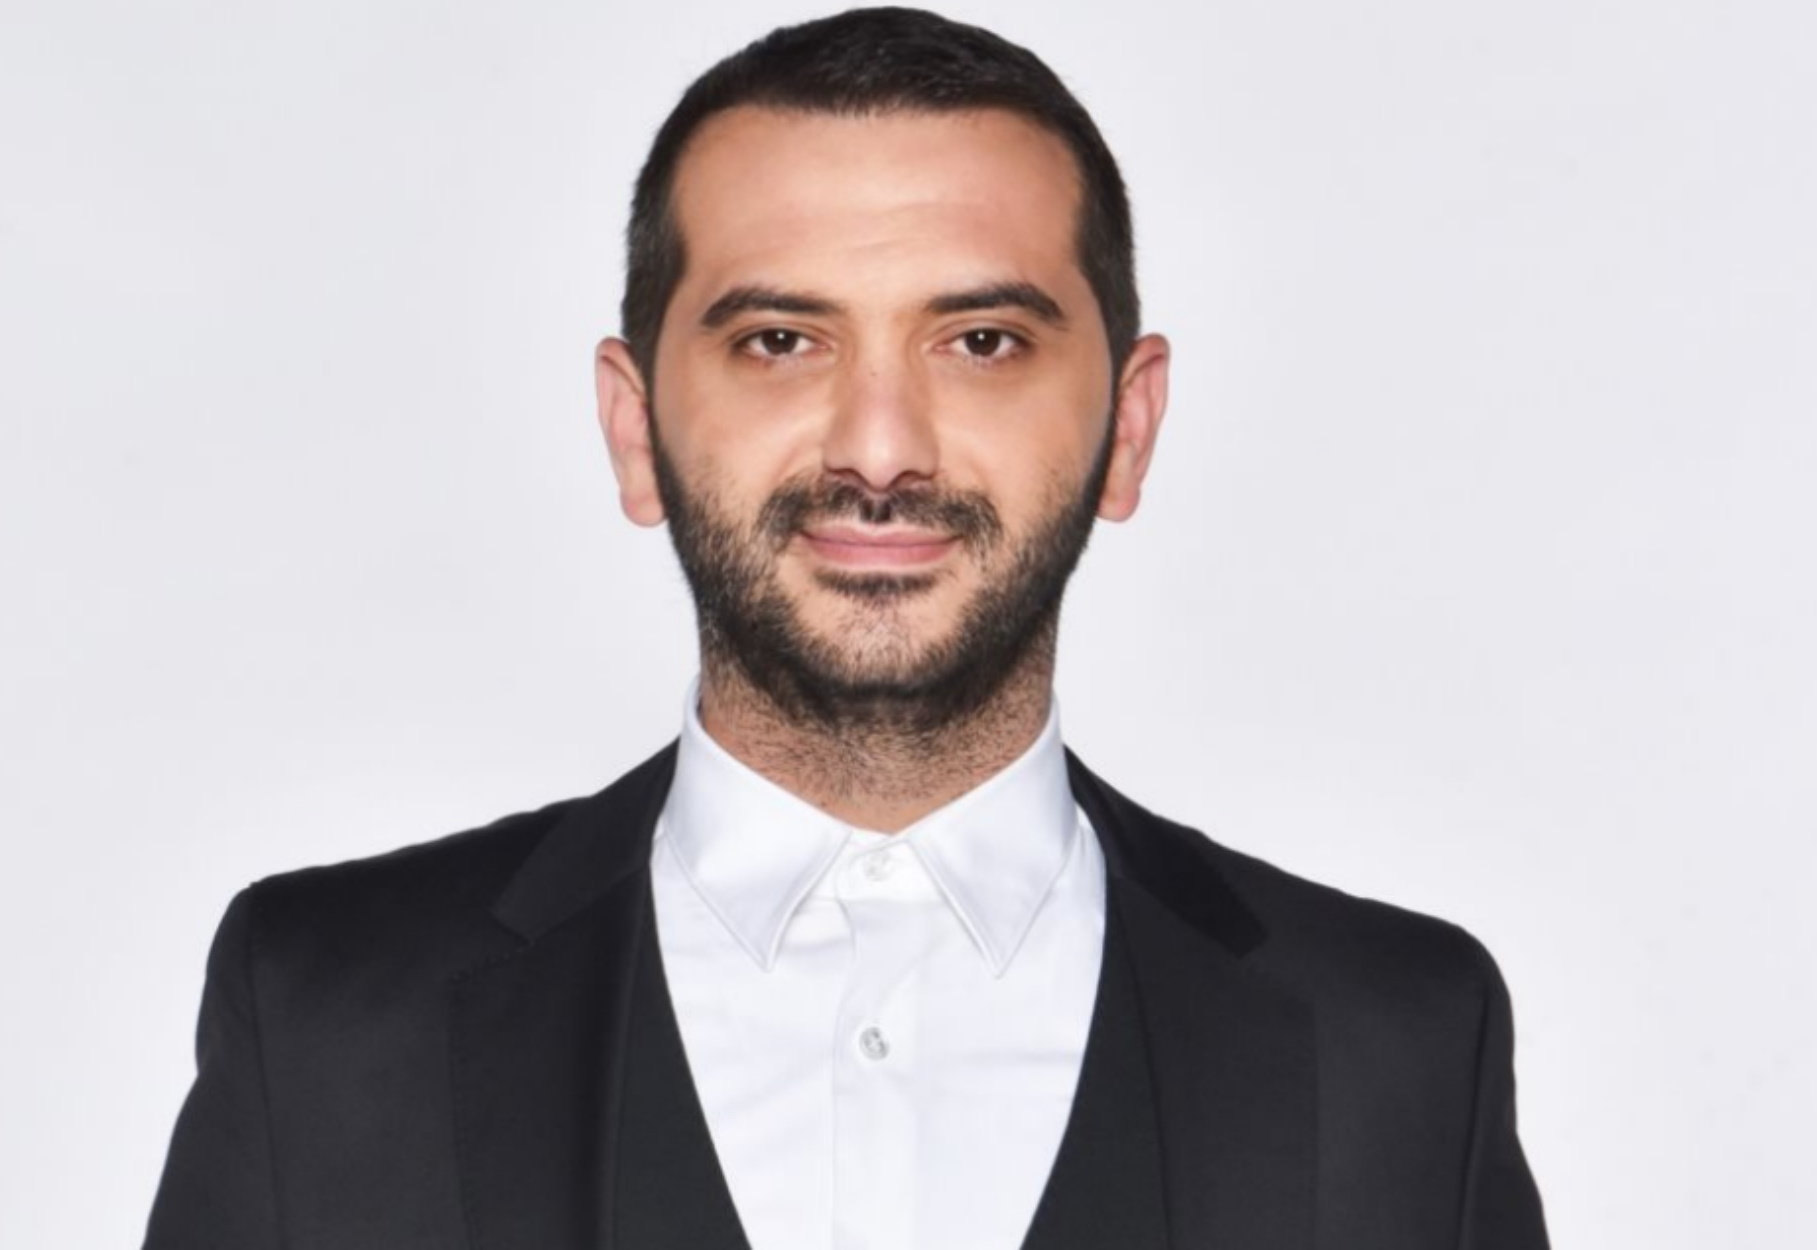 Λεωνίδας Κουτσόπουλος: Πήγε για ελεύθερη πτώση μετά το τέλος του  MasterChef